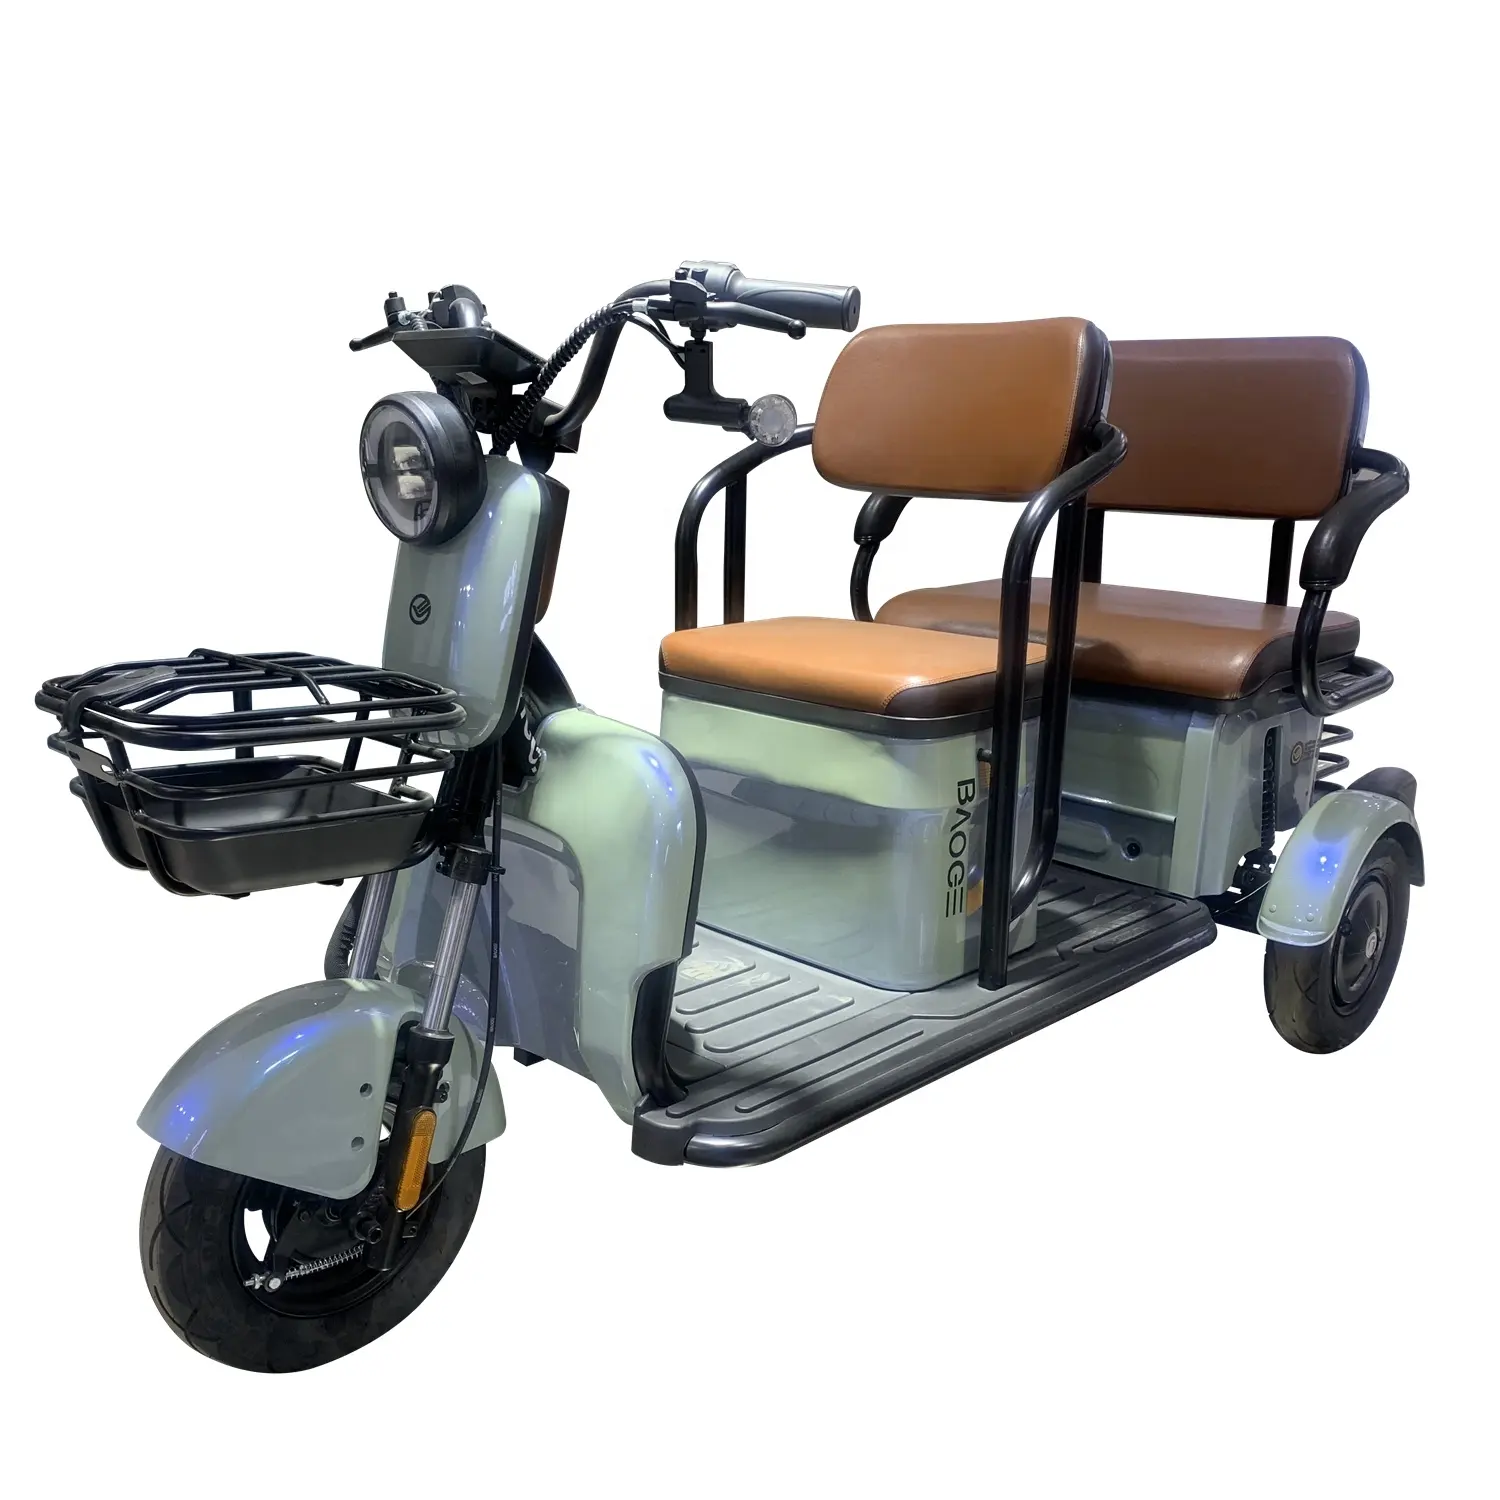 Kind Pick-Up Tuktuk Elektrische Driewieler 3-wiel Elektrische Sightseeing Voertuig